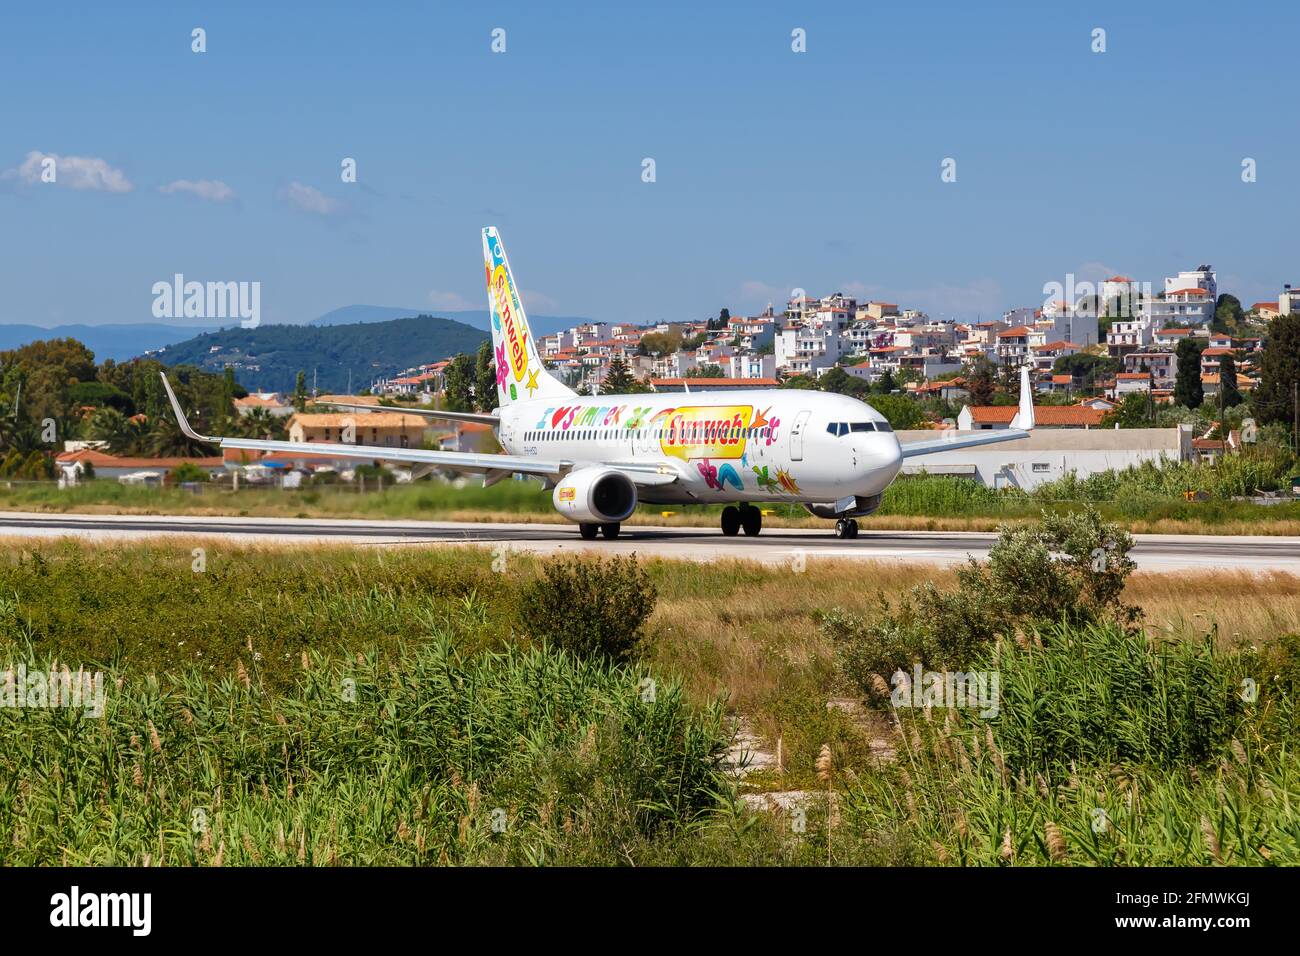 Skiathos, Grecia - 6 giugno 2016: Transavia Boeing 737-800 aereo con la livrea speciale Sunweb all'aeroporto di Skiathos (JSI) in Grecia. Foto Stock